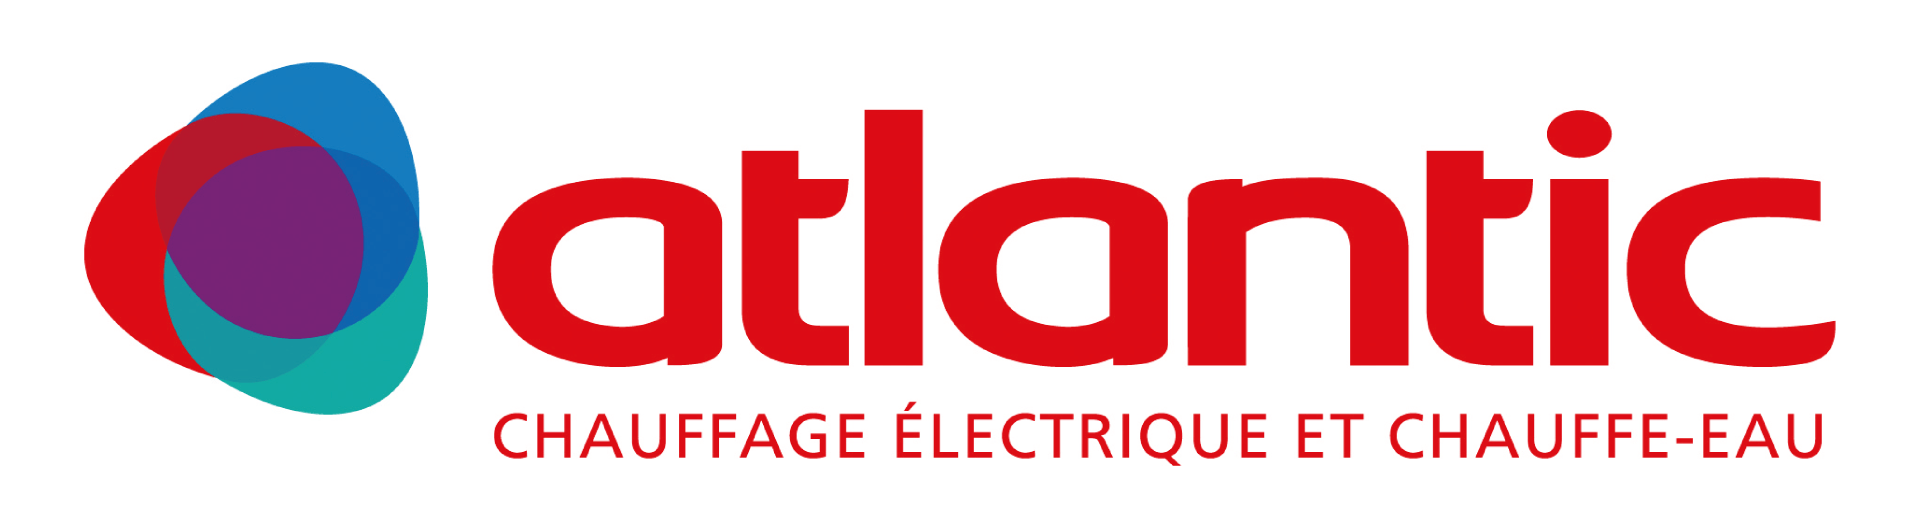 Logo de la marque Atlantic